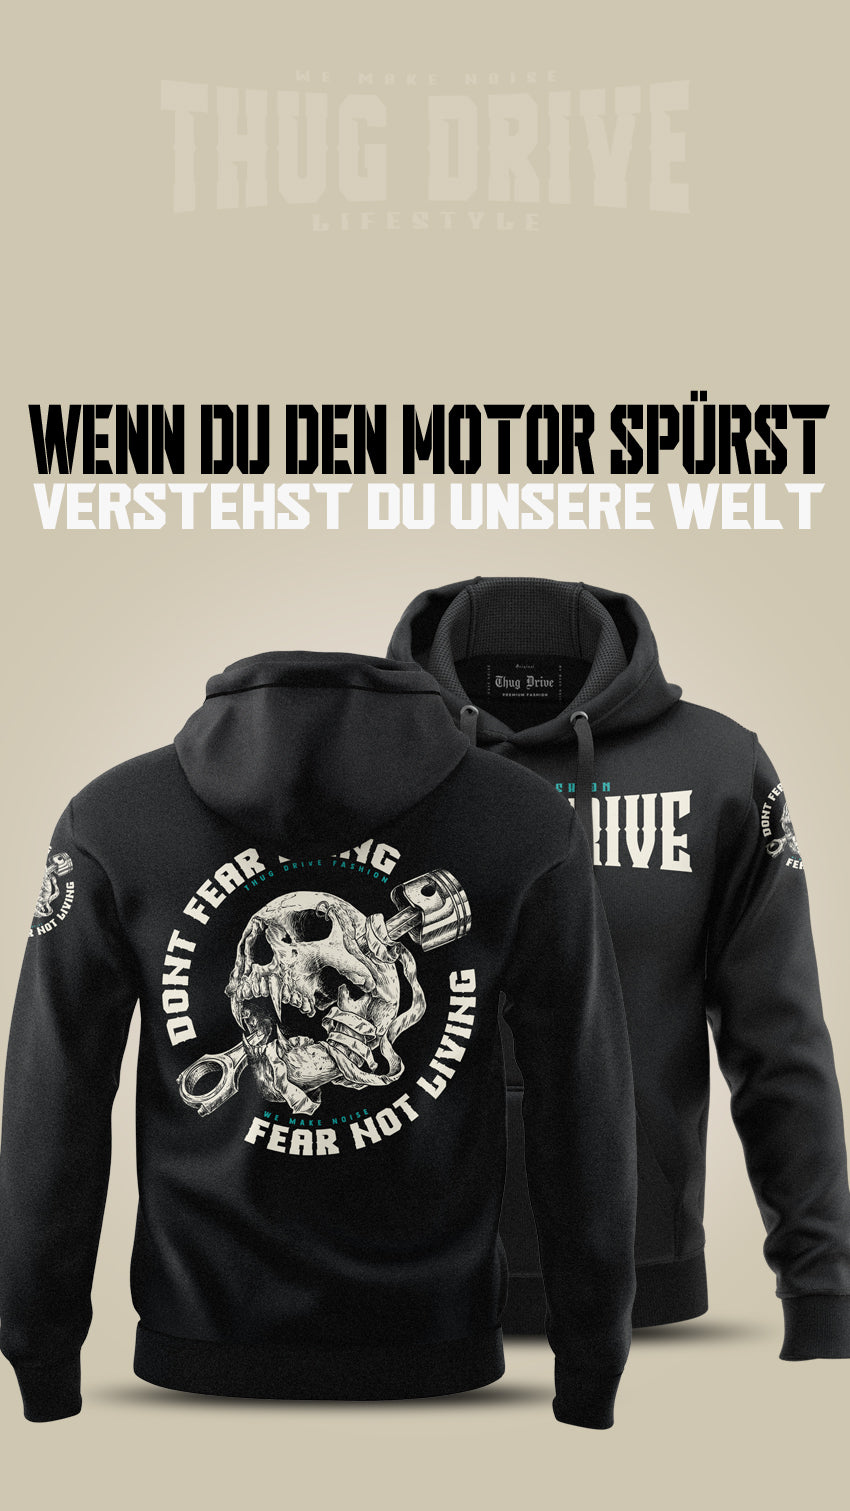 Der Thug Drive Hoodie in Schwarz mit Skull und inspirierendem Spruch: "Don't fear dying, fear not living"